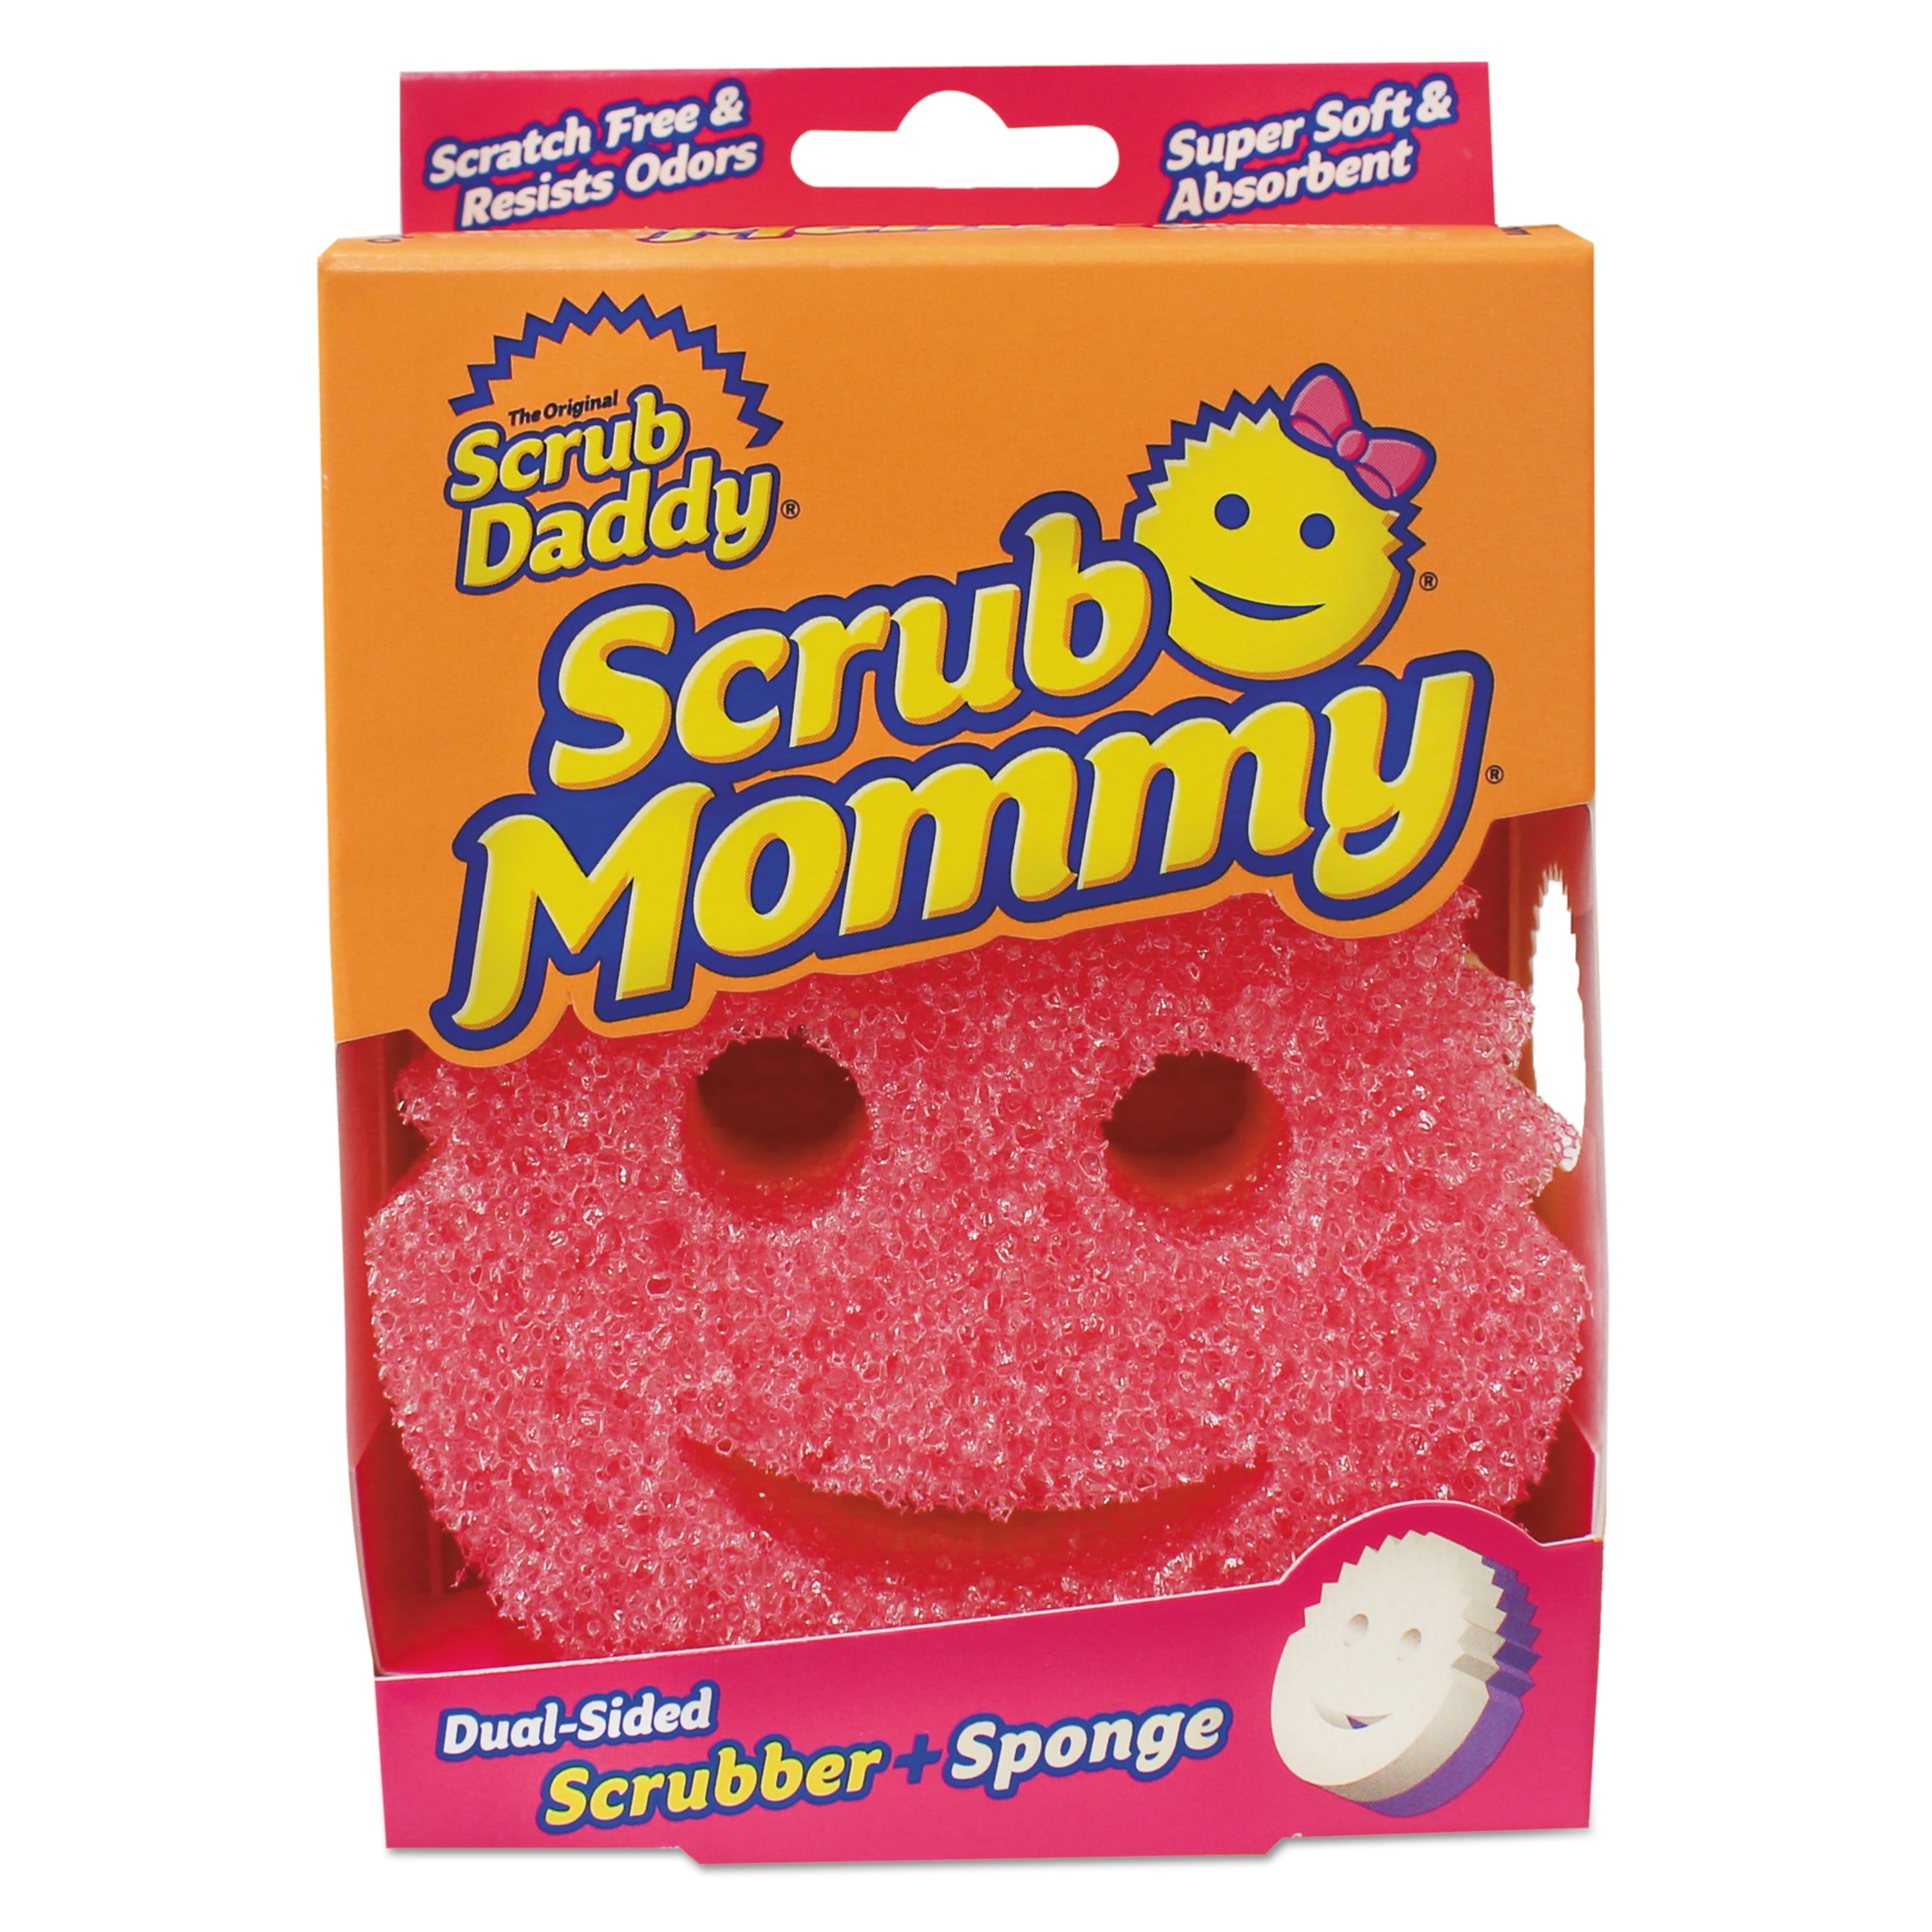 Been scrubbed. Губка скраб Дэдди. Scrub Mommy губка. Губки Scrub Daddy Mommy. Губки для мытья посуды Scrub Daddy.